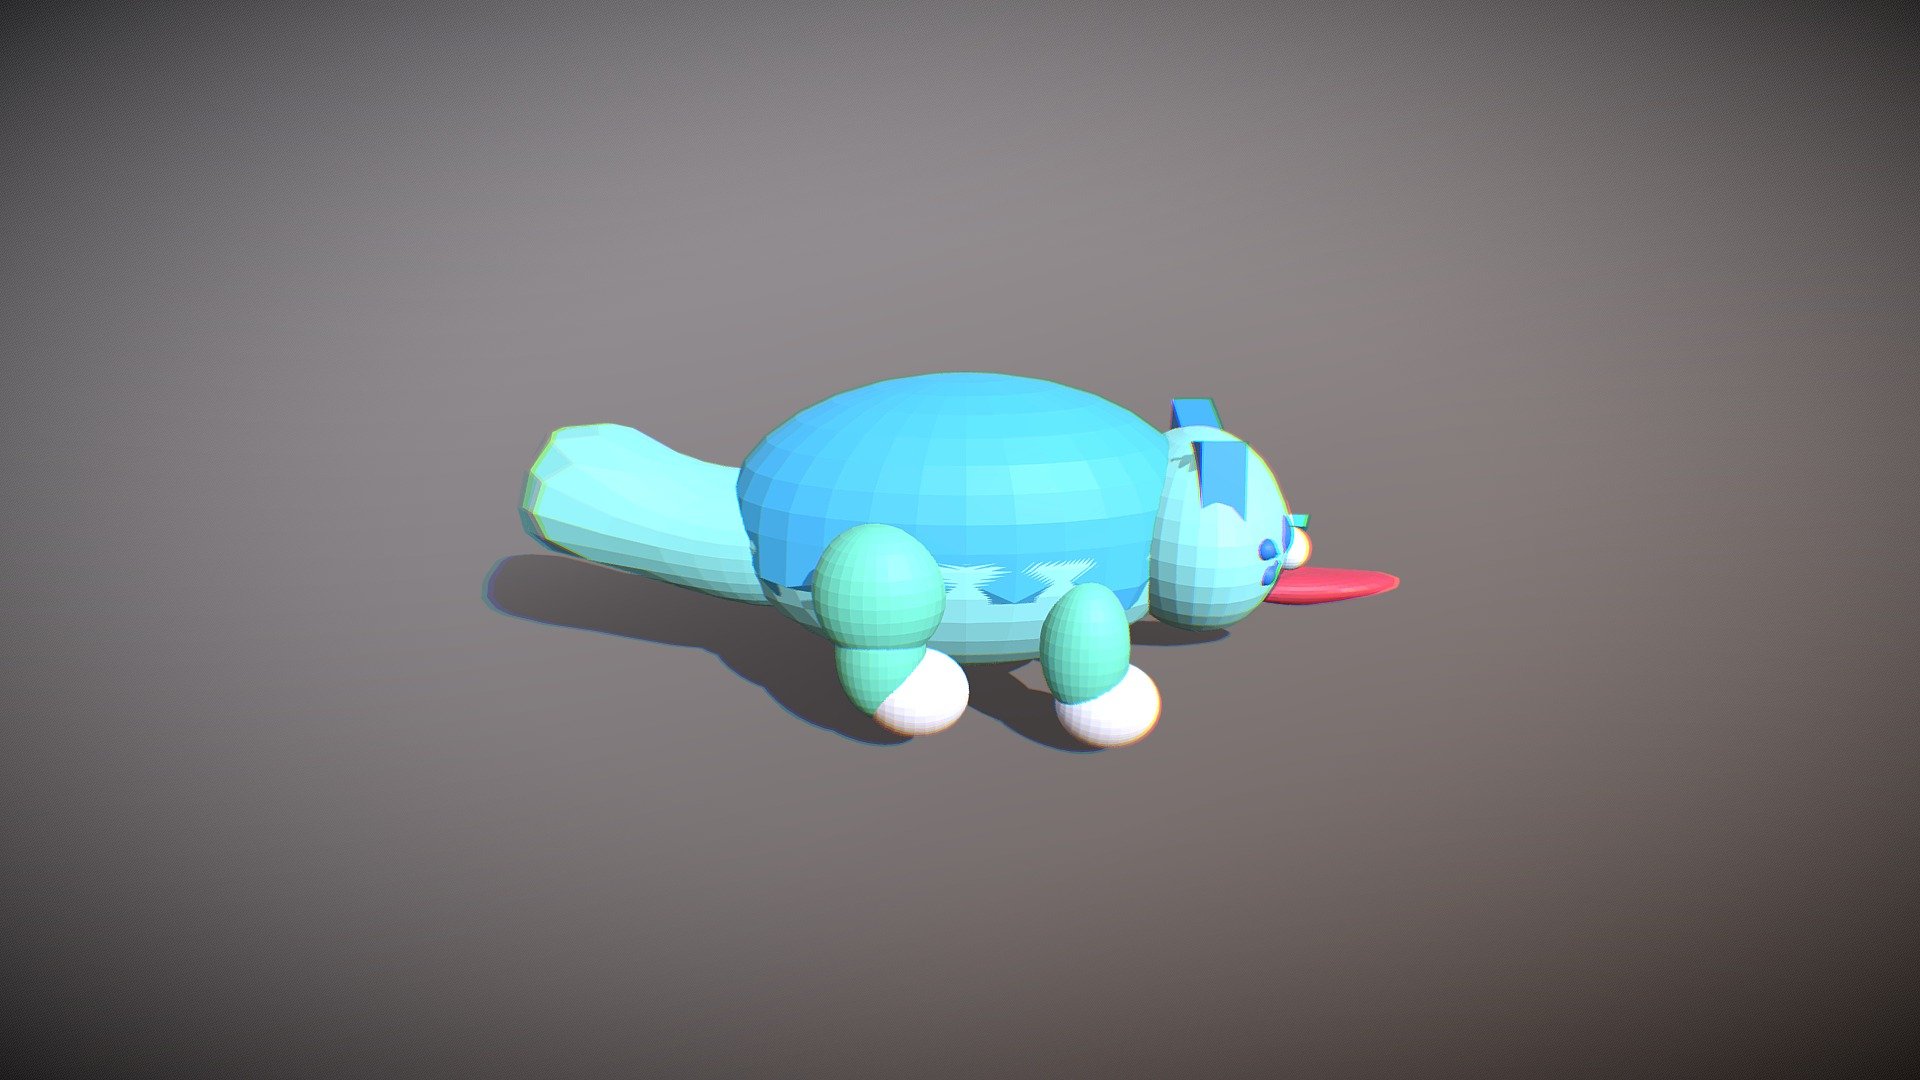 Poppy-playtime 3D models - Sketchfab